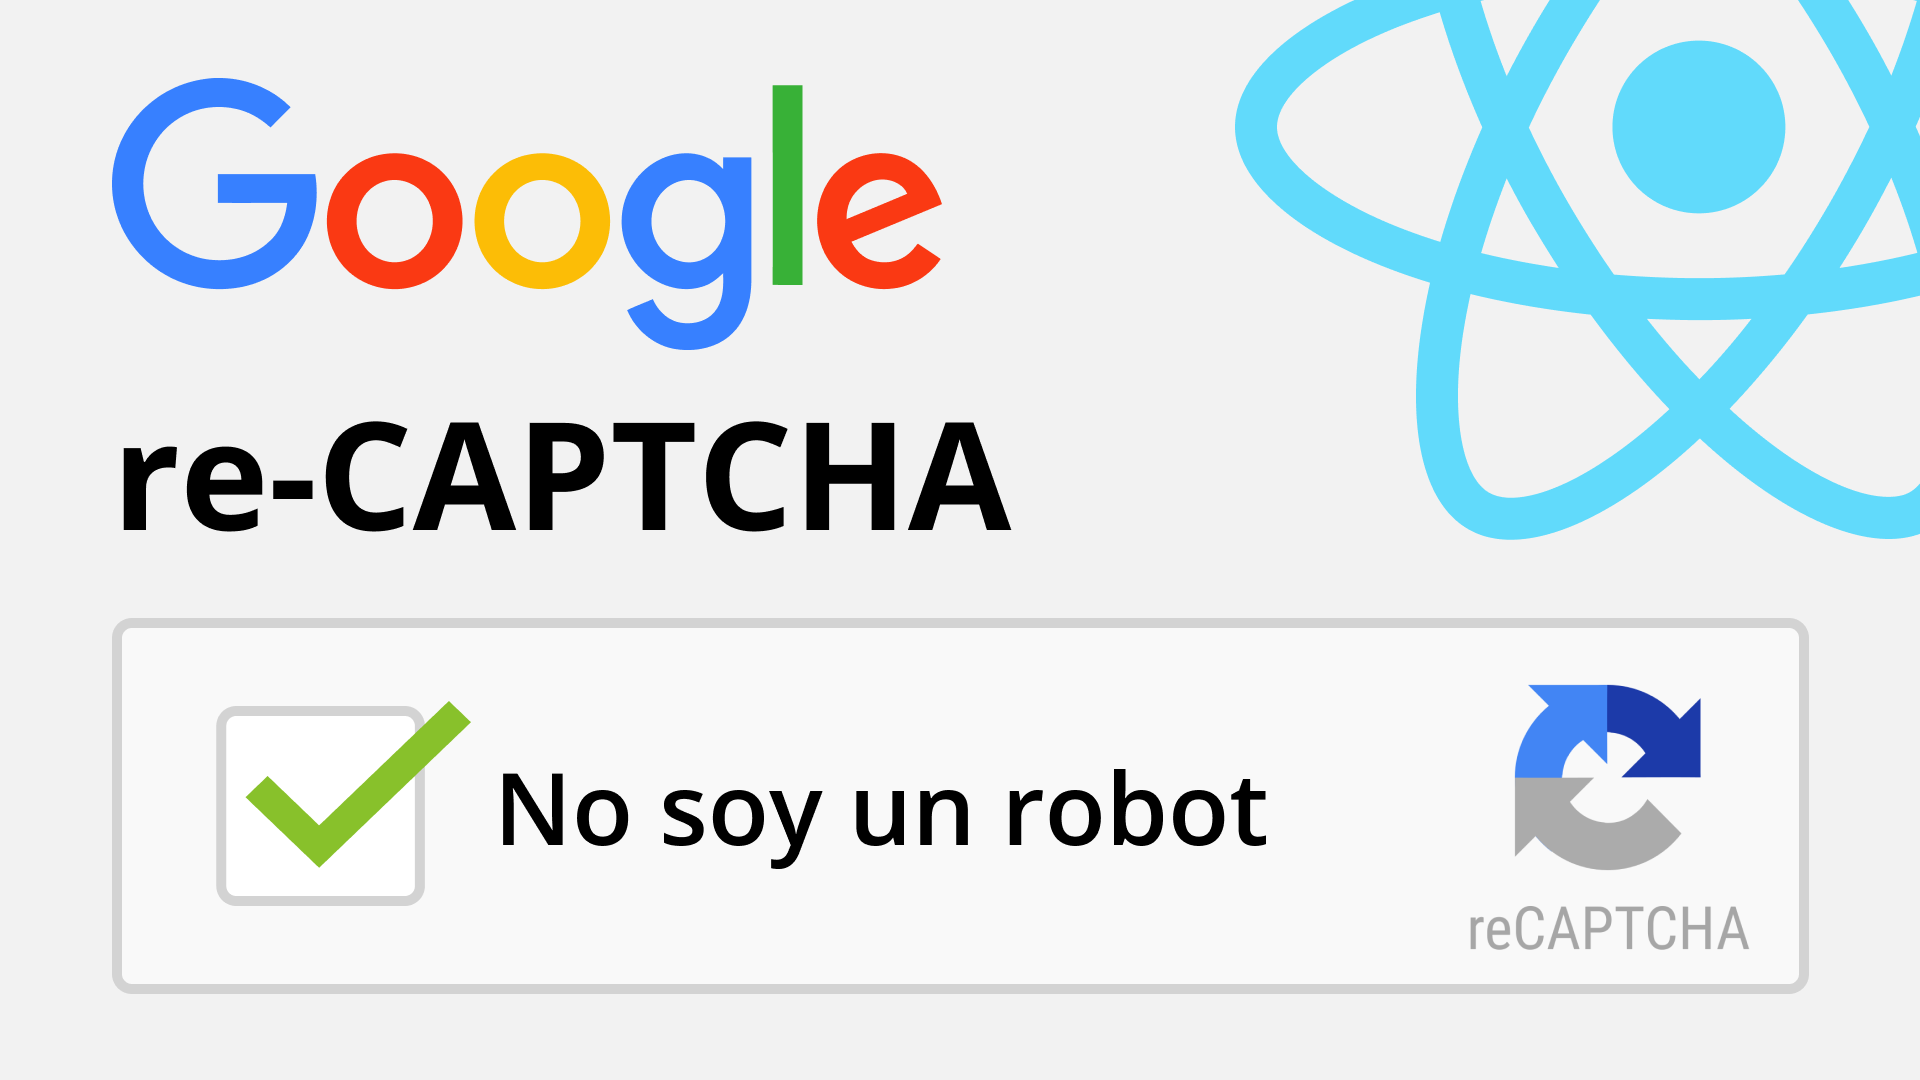 Como implementar re-CAPTCHA con REACT